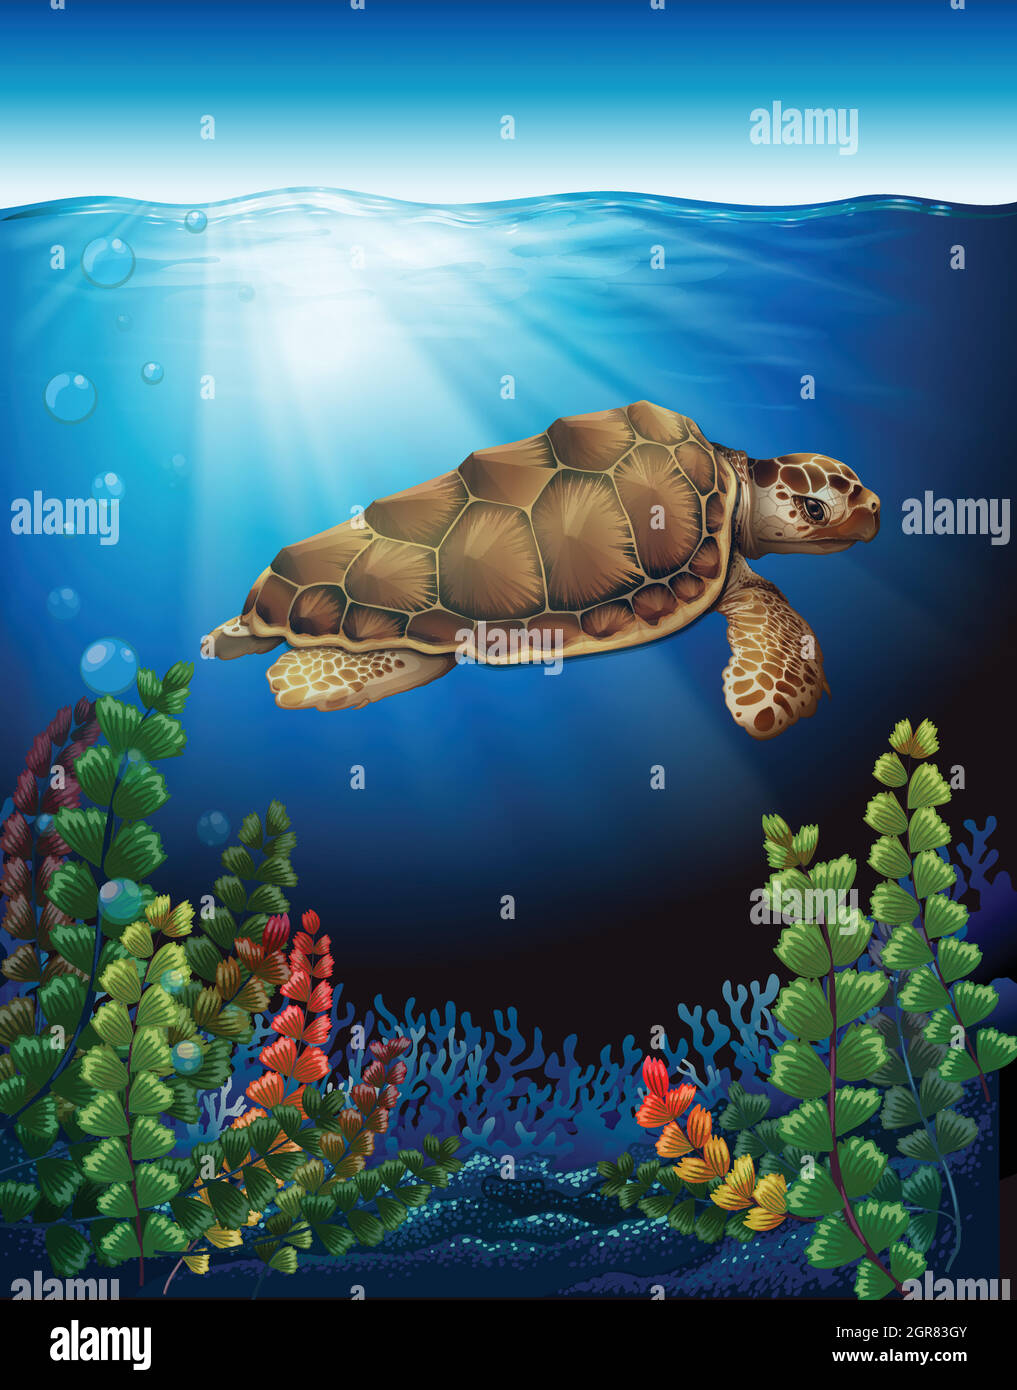 Une tortue de mer sous l'eau Illustration de Vecteur